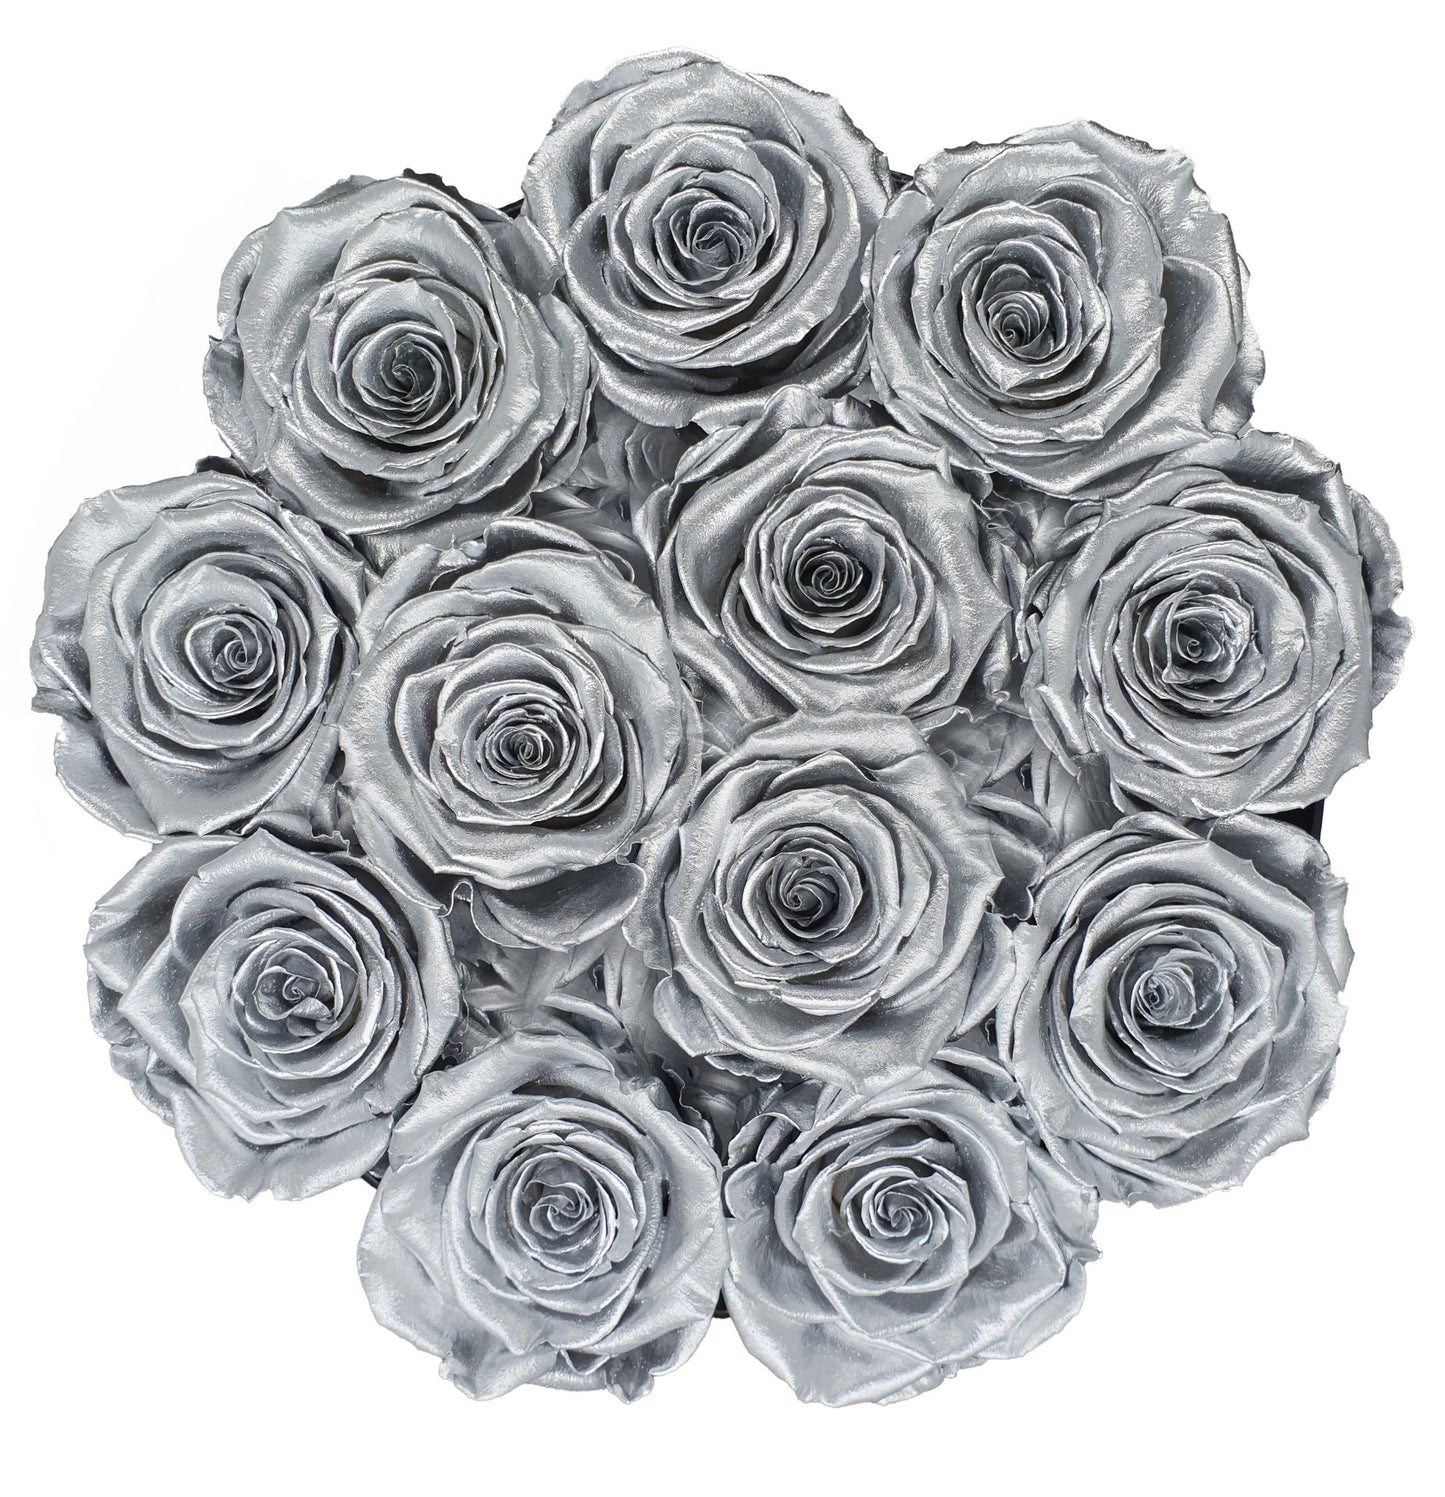 Flowerbox de Rosas Preservadas Prateadas com Bombons Ferrero Rocher®